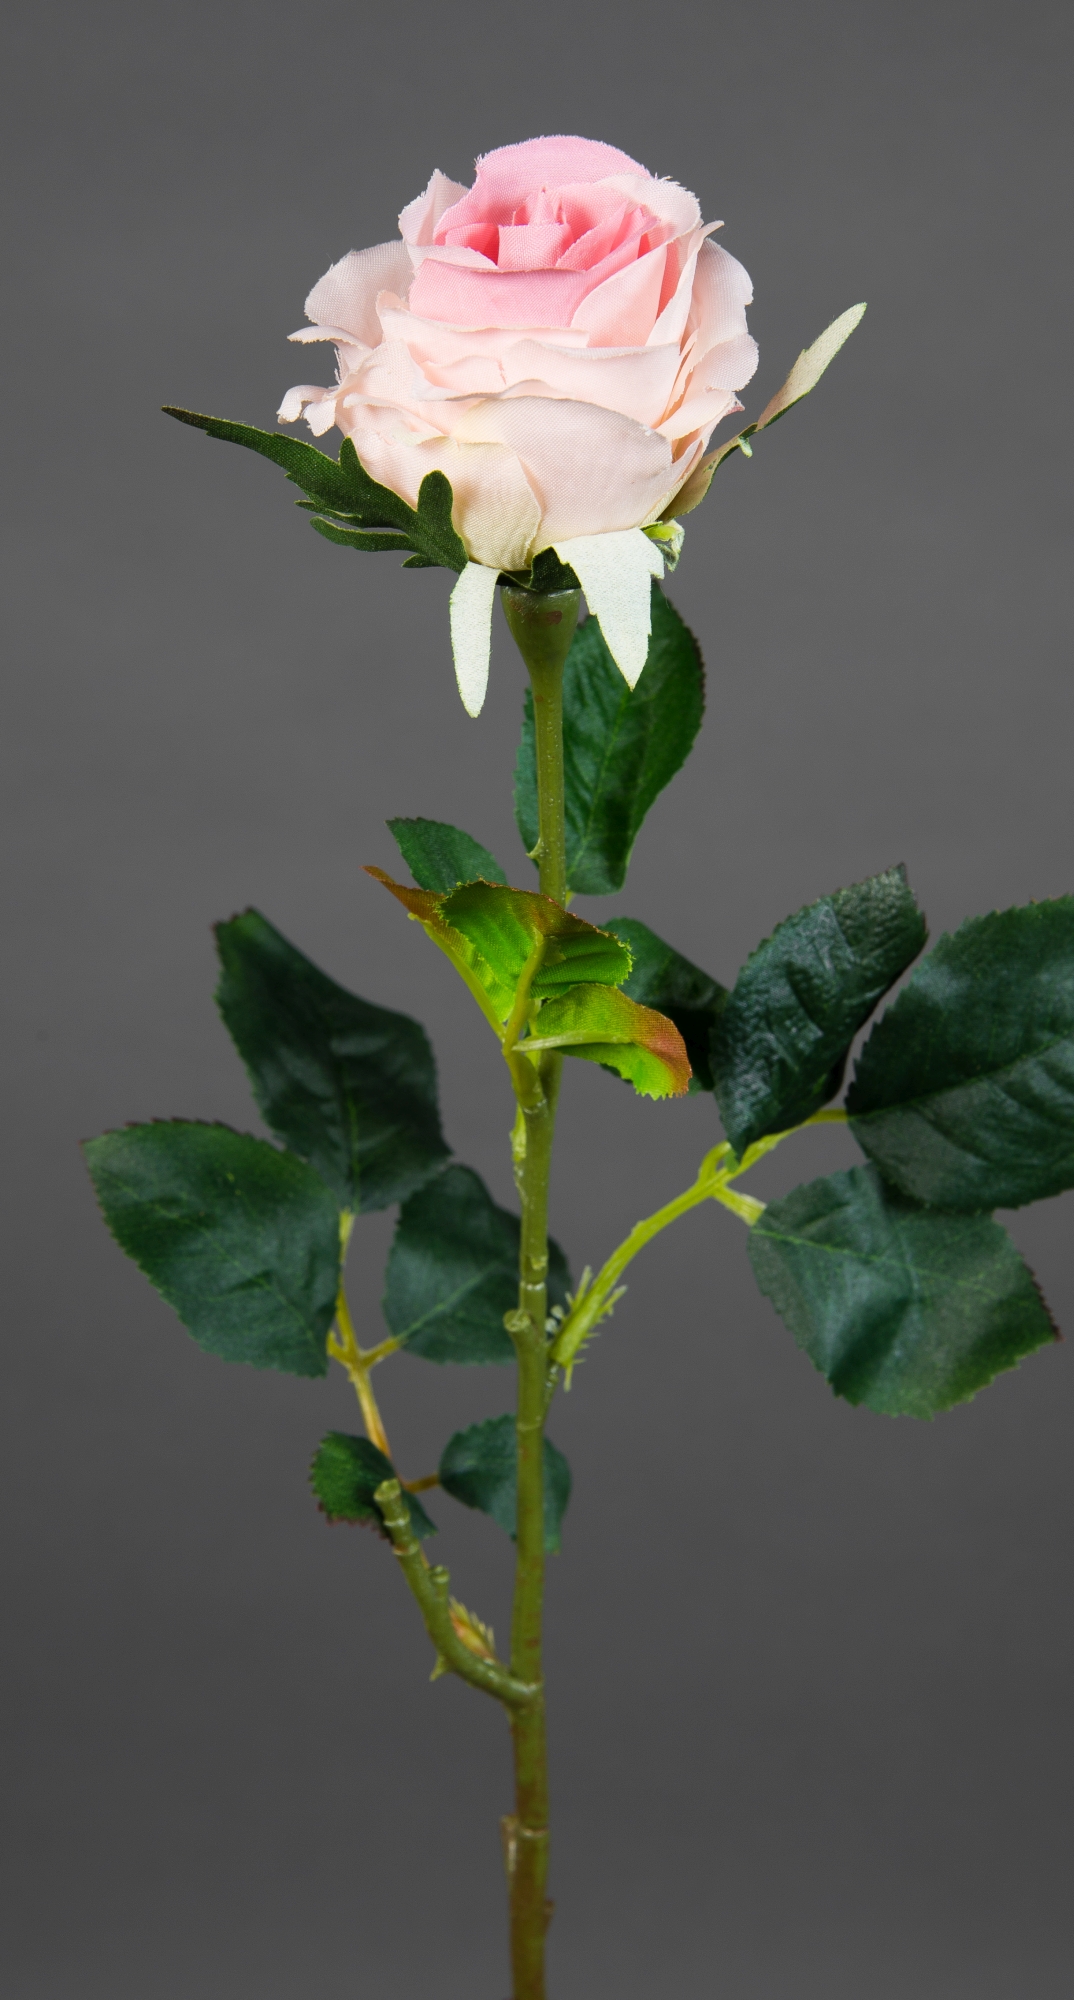 Stück Kunstblumen Elena 12 Blumen rosa Rosen Seidenblumen Rose PM 45cm künstliche